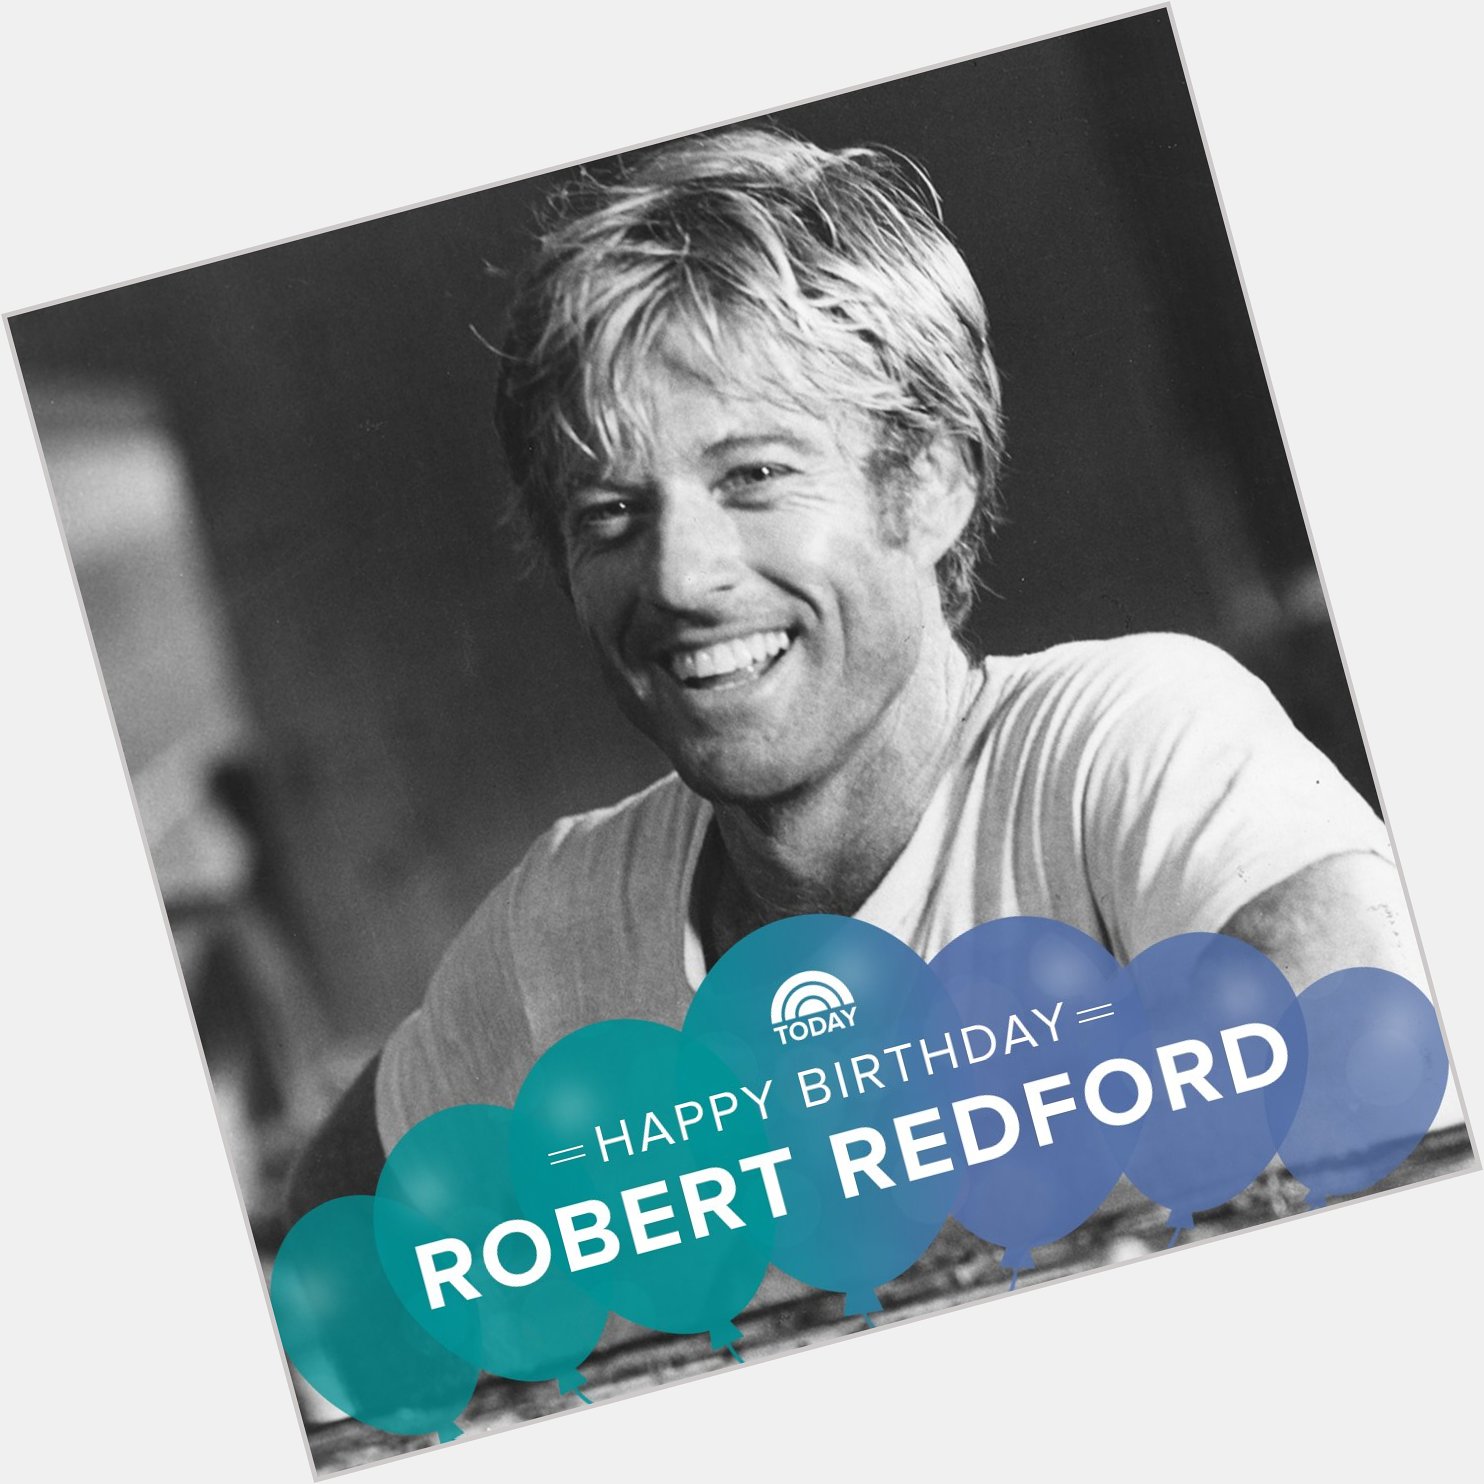 Happy birthday, Robert Redford!  